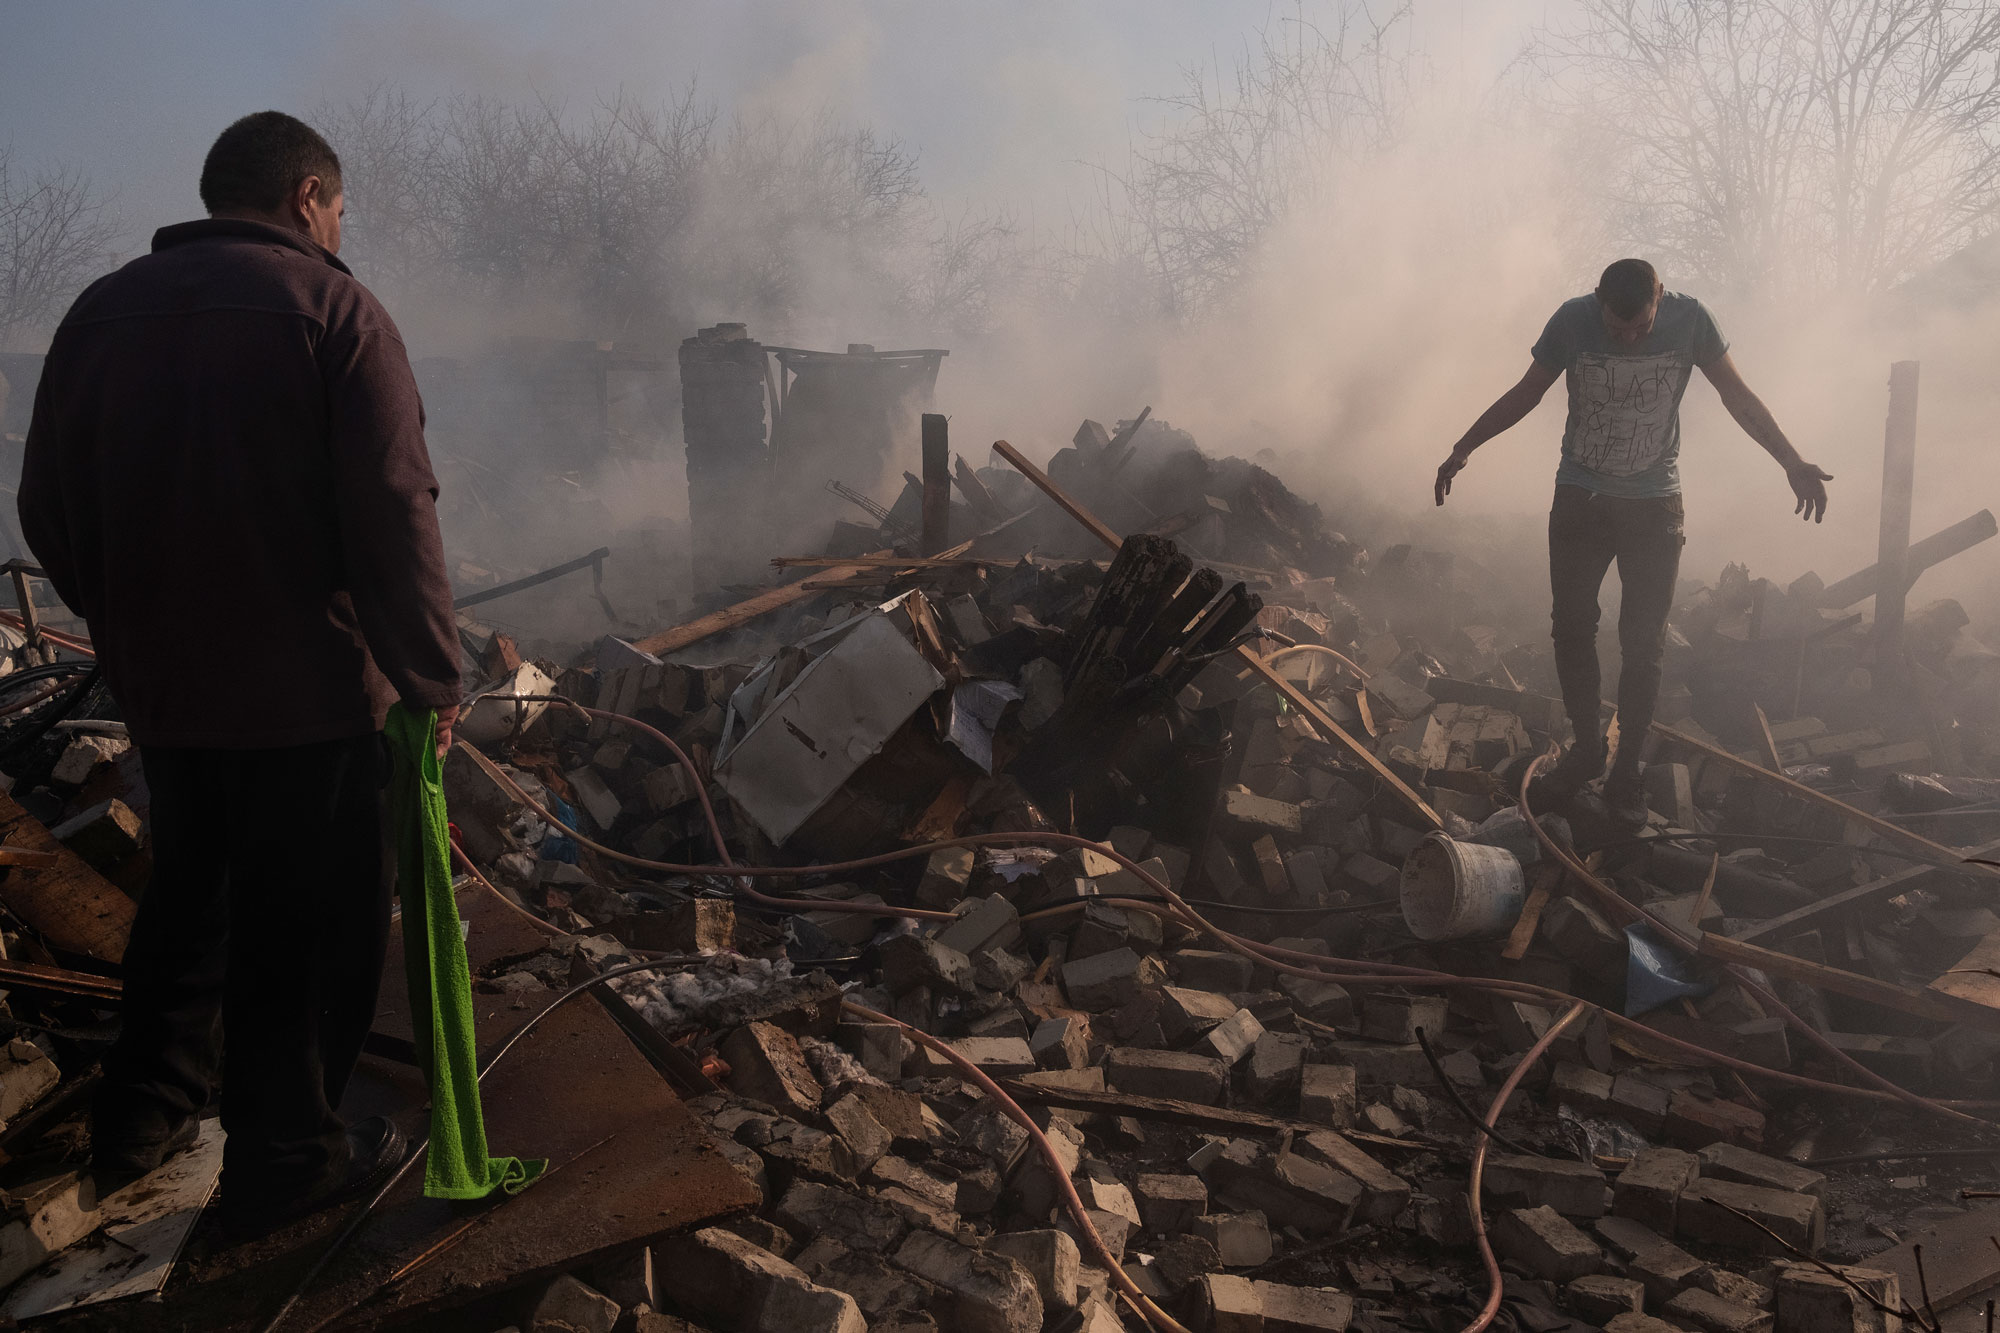 Kharkova, 24. maaliskuuta 2022. Kaksi miestä kävelee venäläisen ohjuksen tuhoaman talonsa raunioissa Harkovin Saltivkan asuinalueella. Alue on vaurioitunut pahoin Ukrainan ja Venäjän taisteluissa. Kuva: Giulio Piscitelli